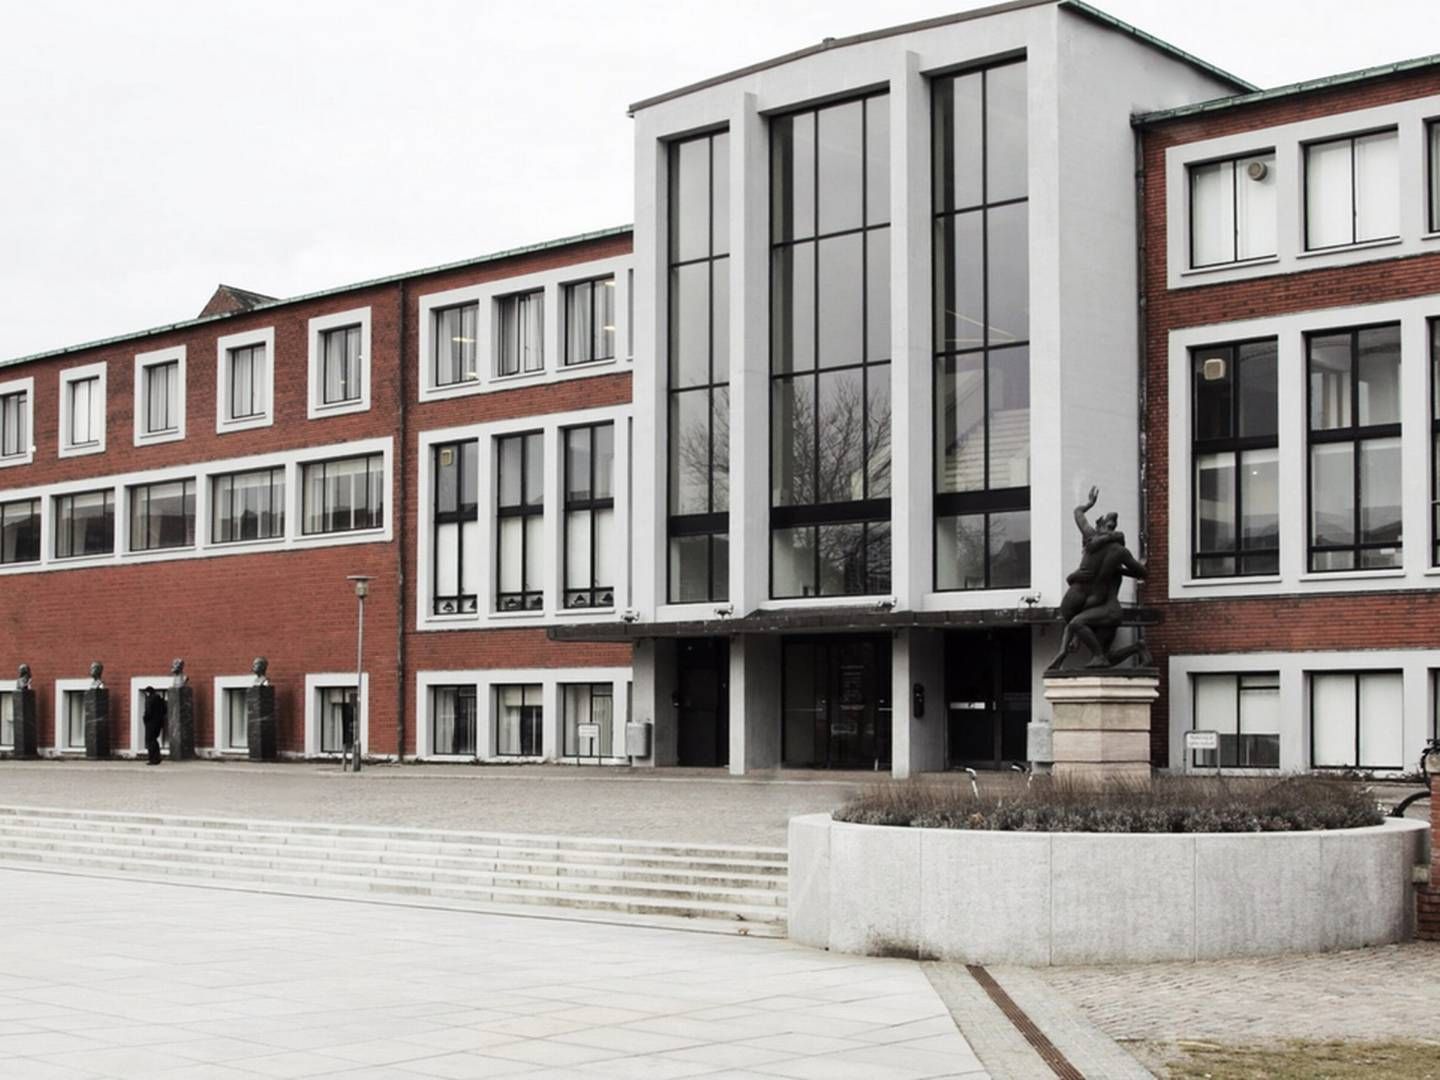 Book1 Design Hostel åbnede i maj 2021 og ligger ved Mølleparken i Aarhus C. Bygningen har tidligere huset Aarhus Hovedbibliotek, hvor navnet på det nu lukkede hostel stammer fra.